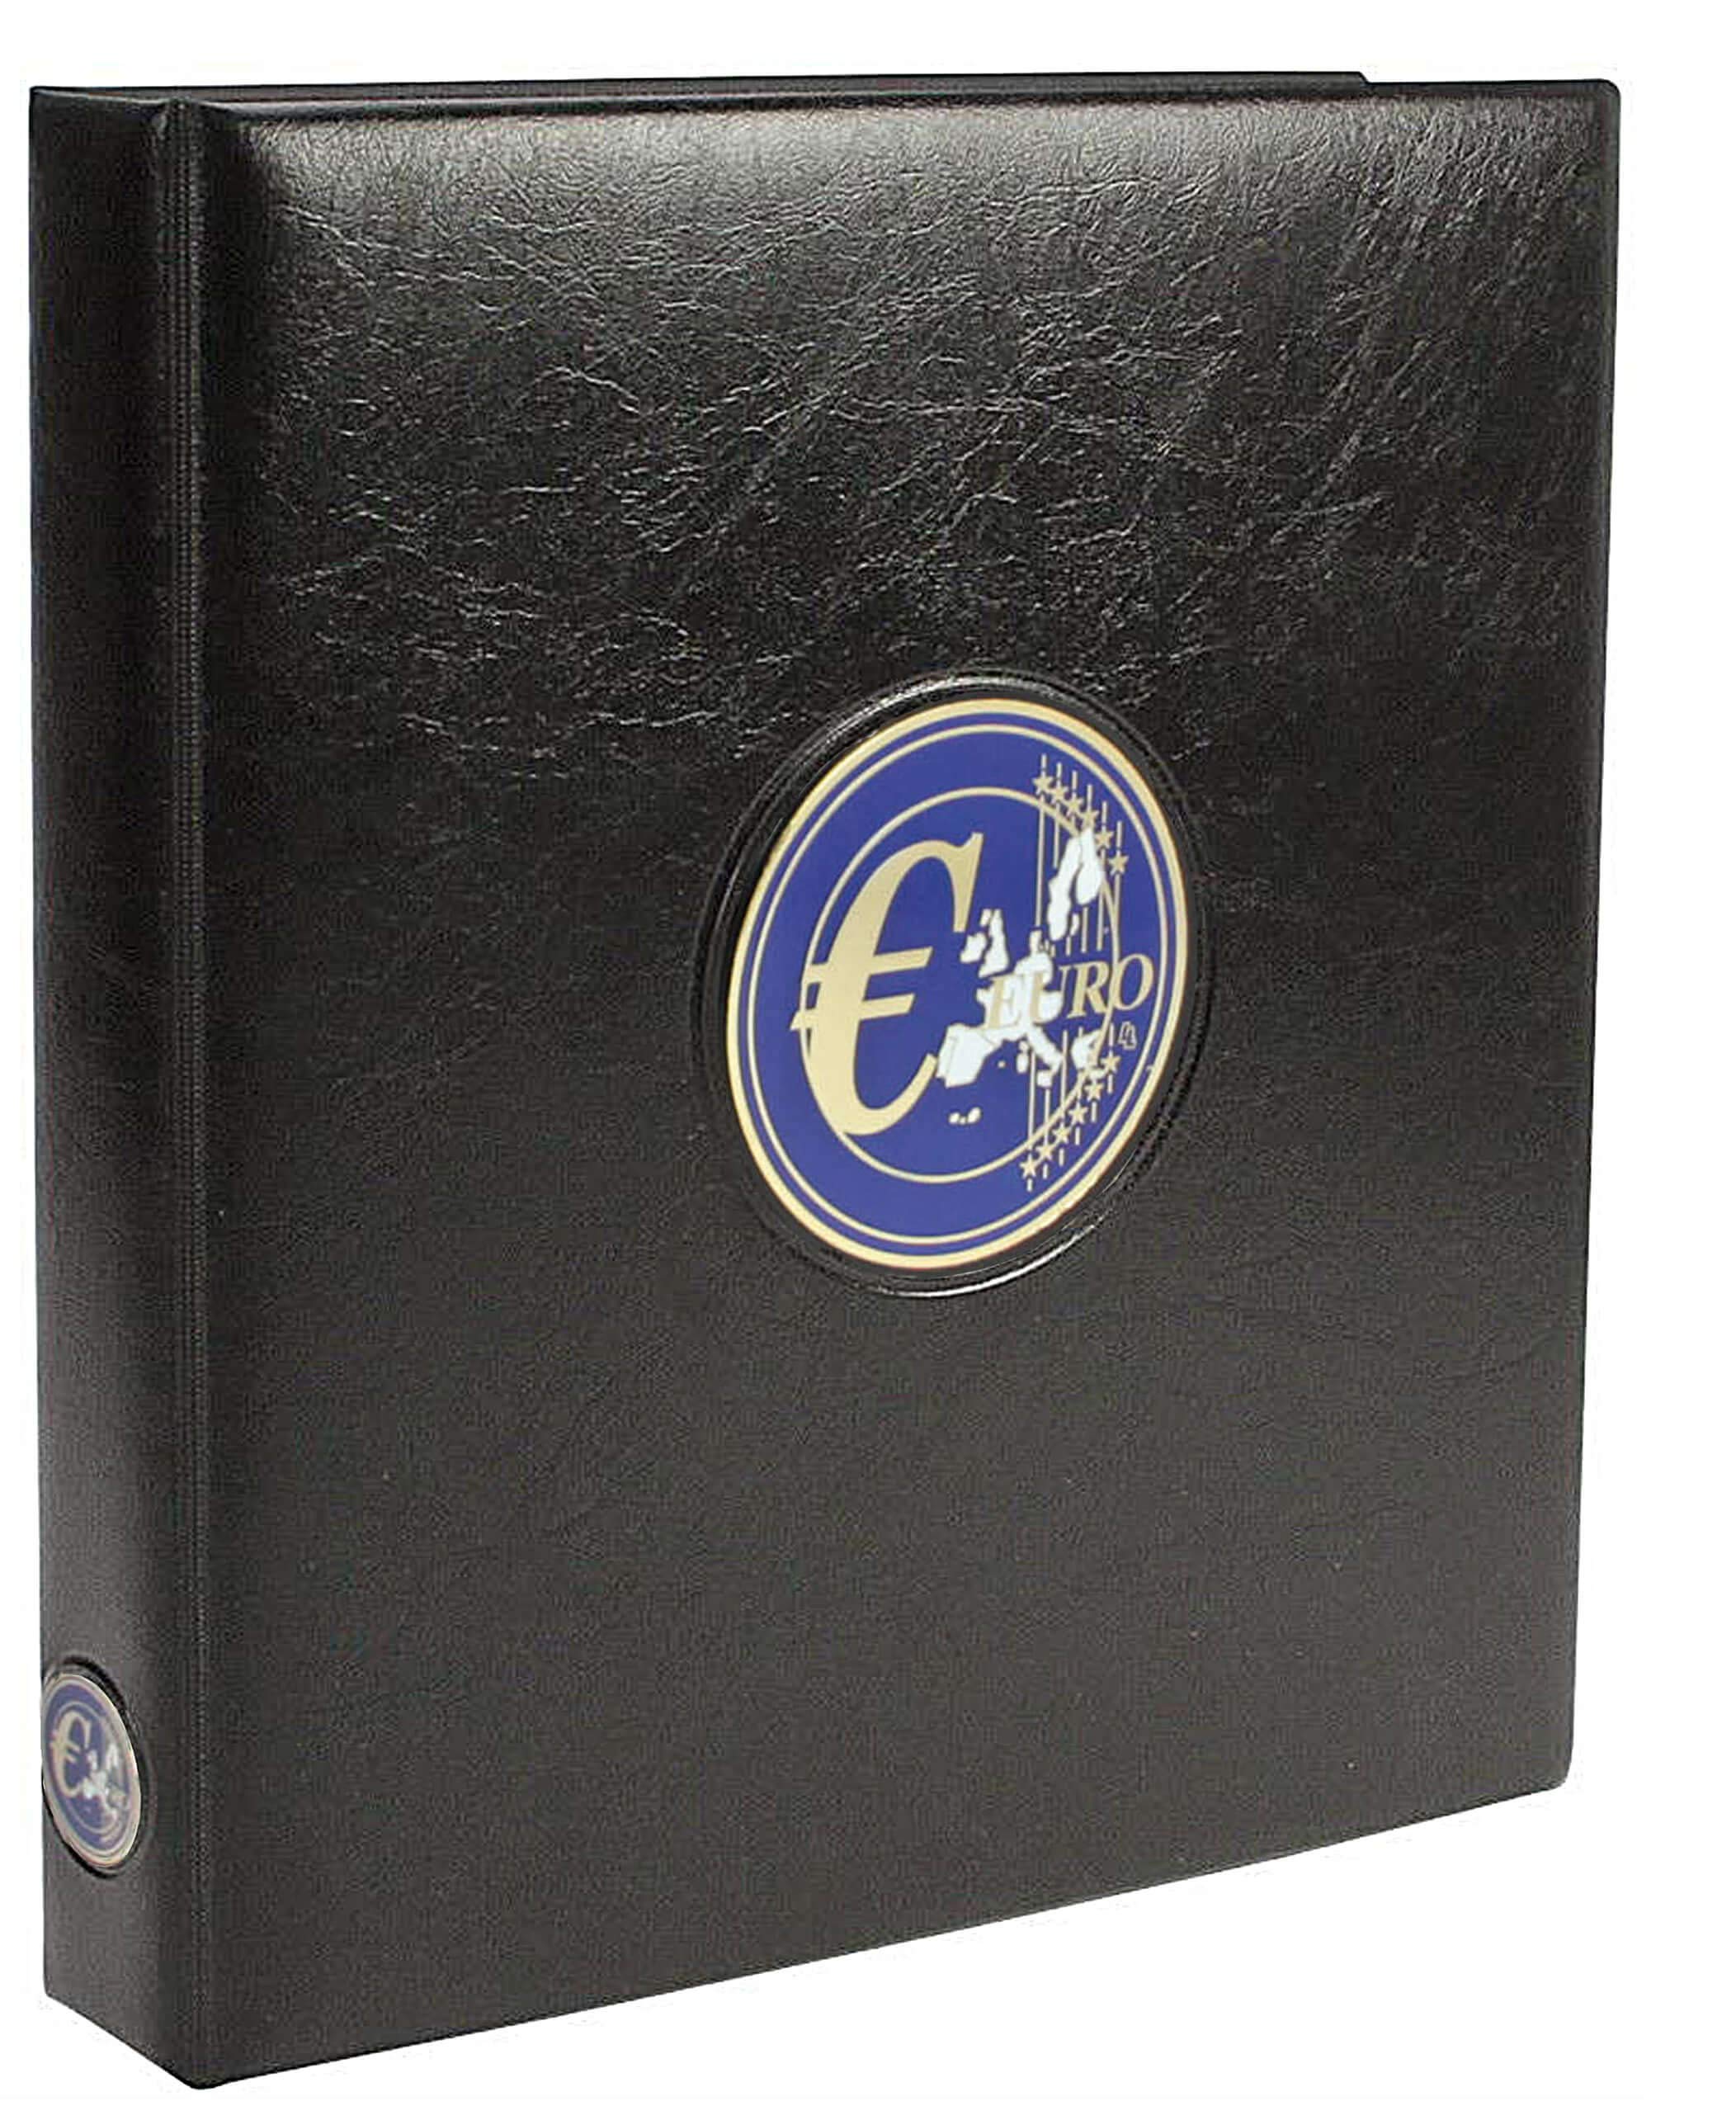 SAFE 7340 Euro Münzen Sammelalbum Aller Länder - Premium Münzsammelalbum - Euromünzalbum- für Deine Coin Collection 1 Cent bis 2 Euro + 5 Blättern für komplette Münzsätze